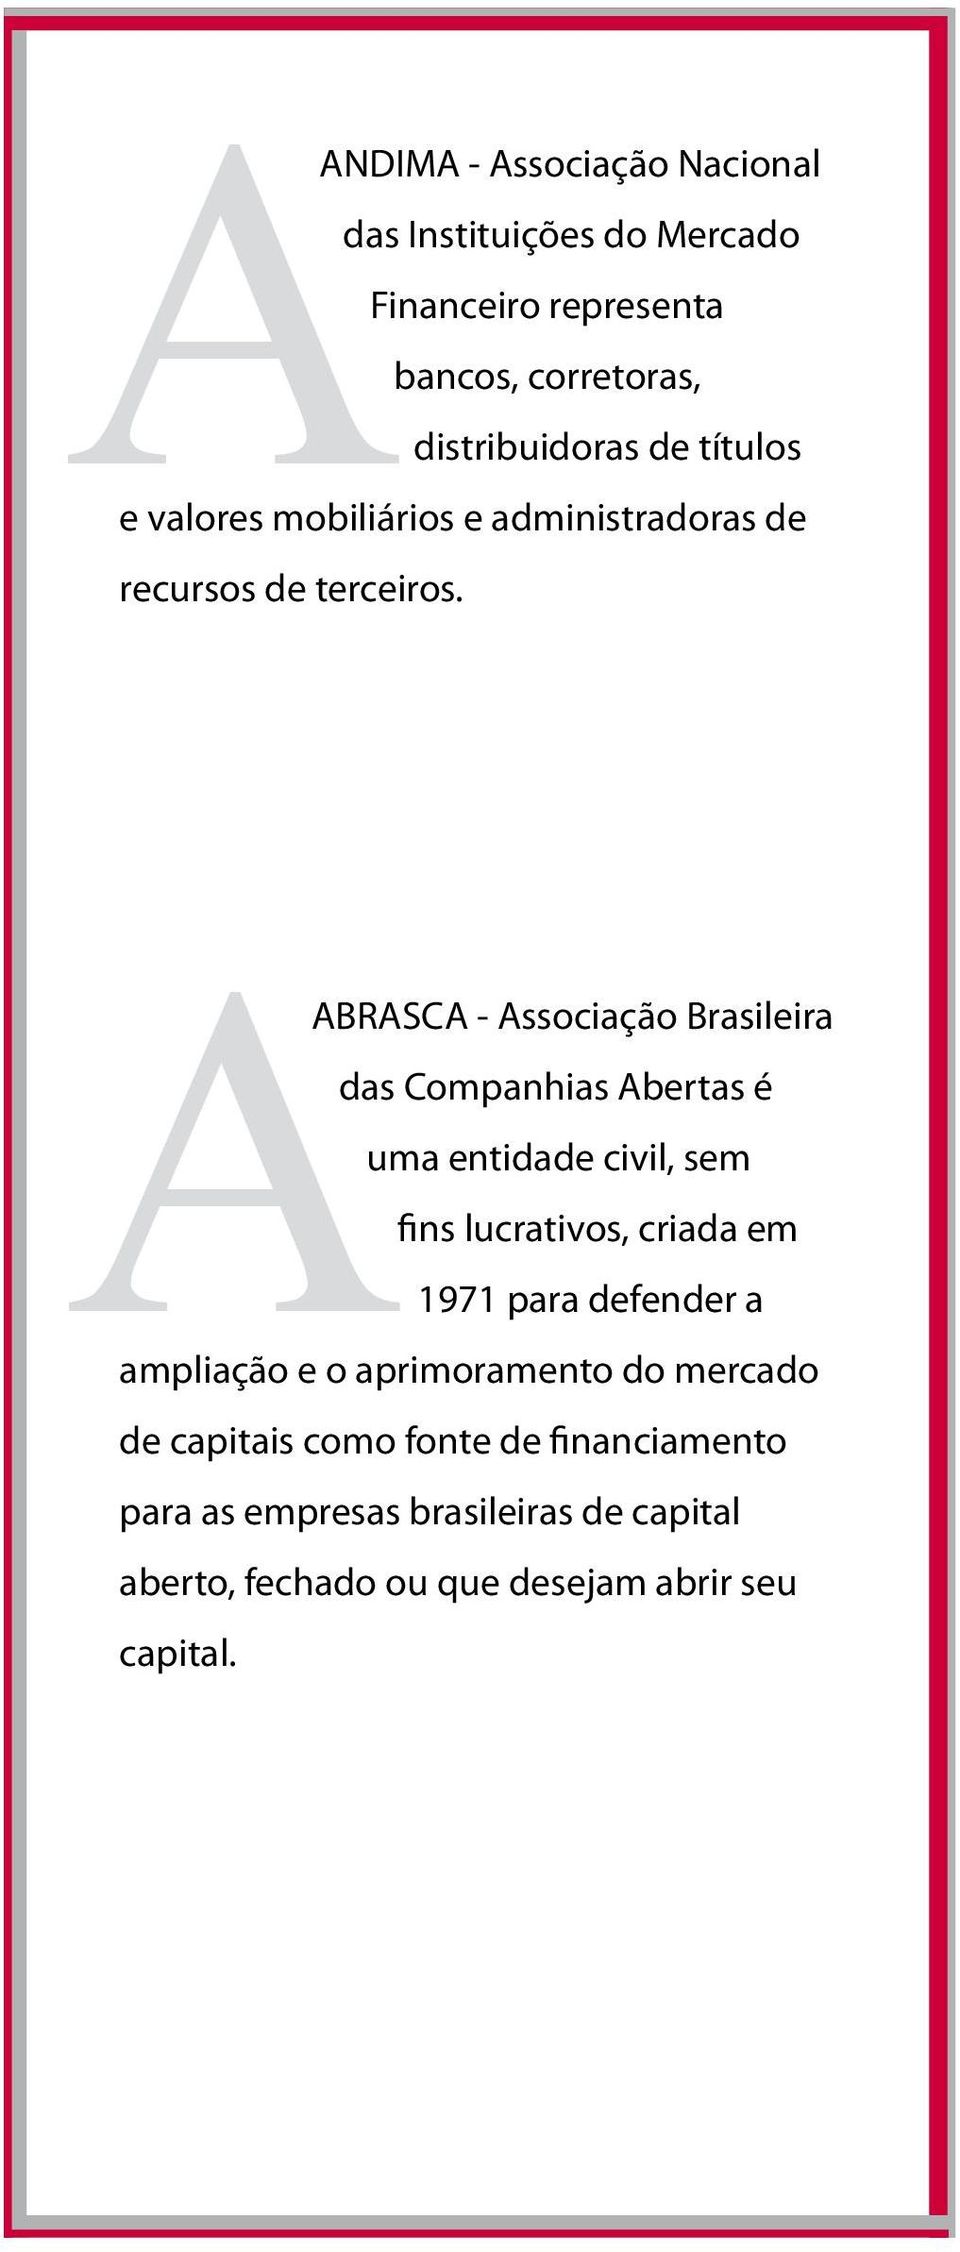 AABRASCA - Associação Brasileira das Companhias Abertas é uma entidade civil, sem fins lucrativos, criada em 1971 para